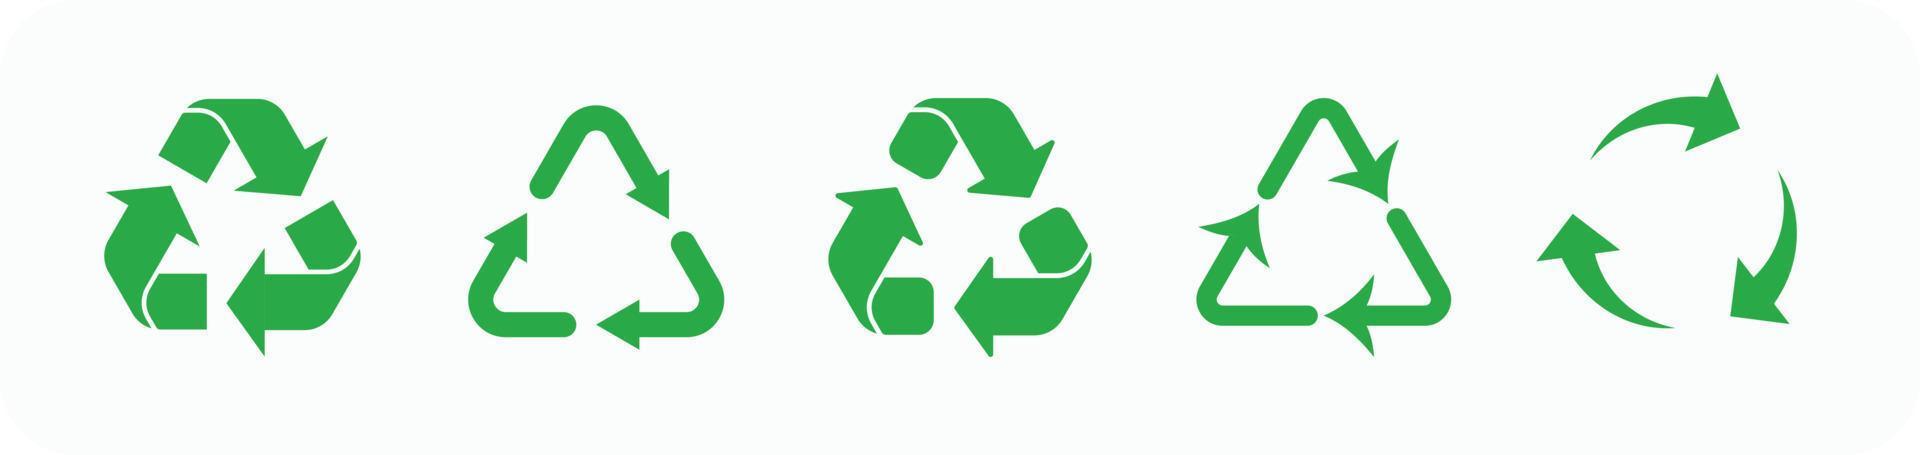 ecología reciclar símbolo conjunto eps10 - vector